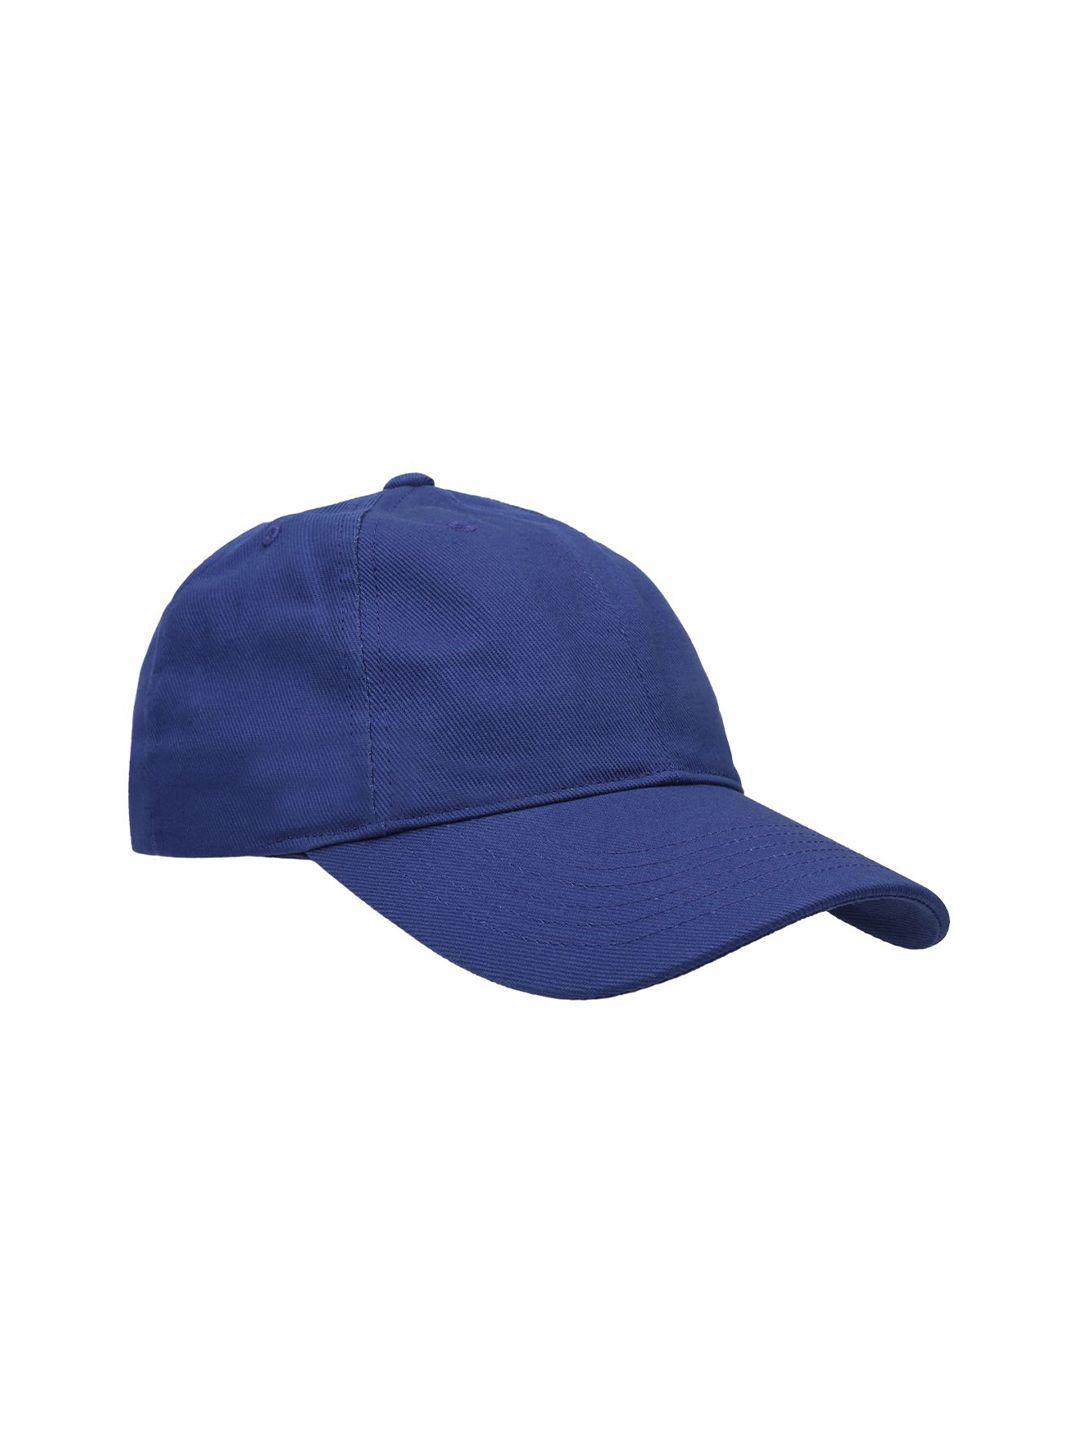 nivia men blue baseball cap